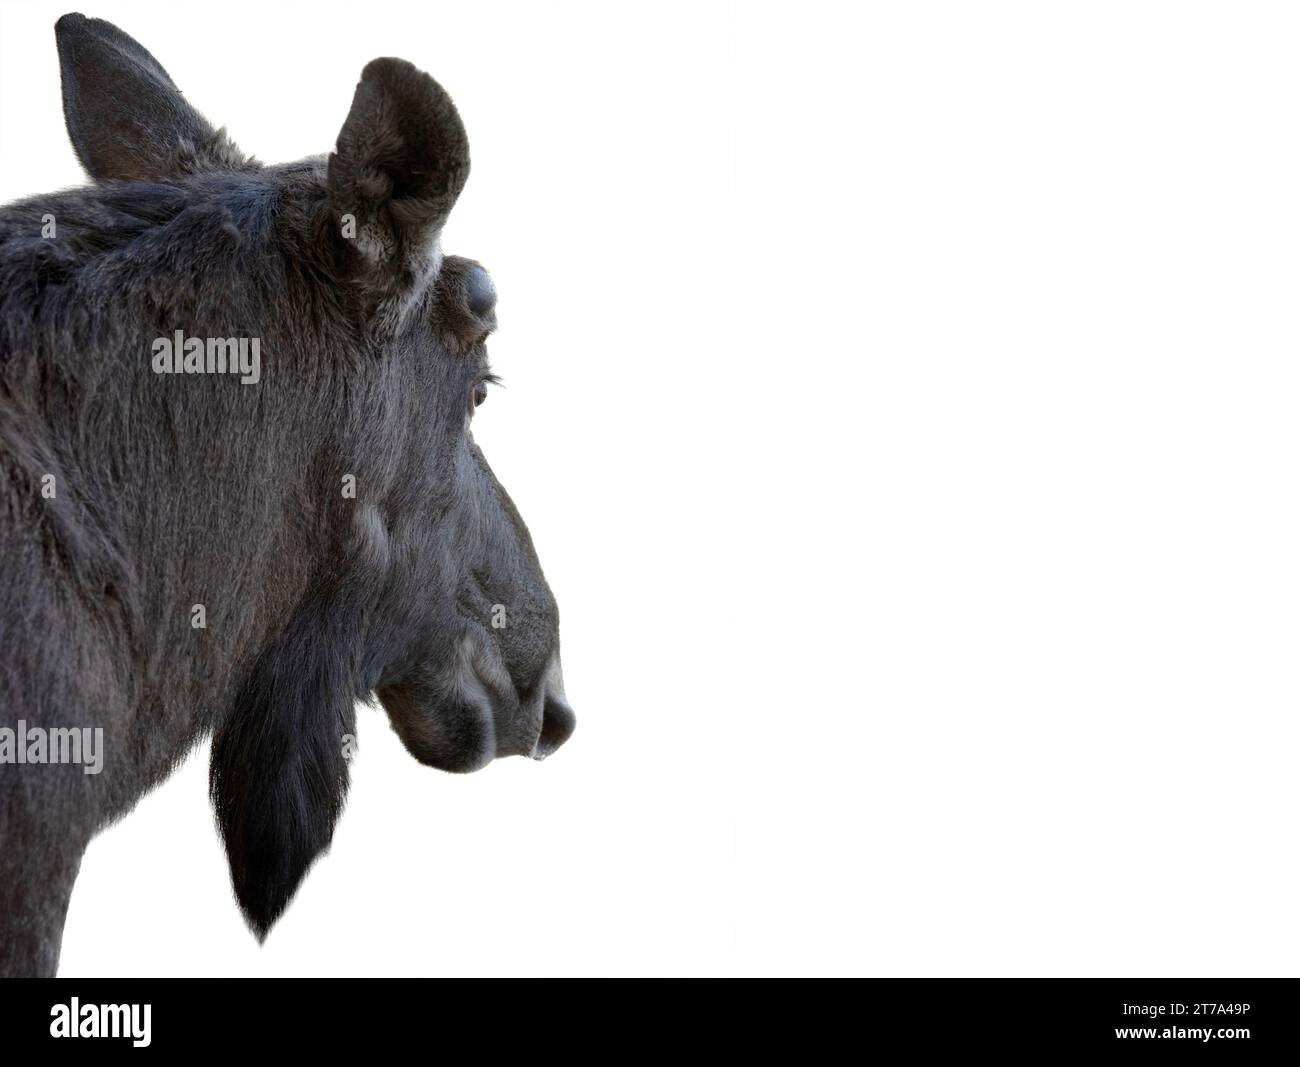 moose portrait isolated on white background Stock Photo